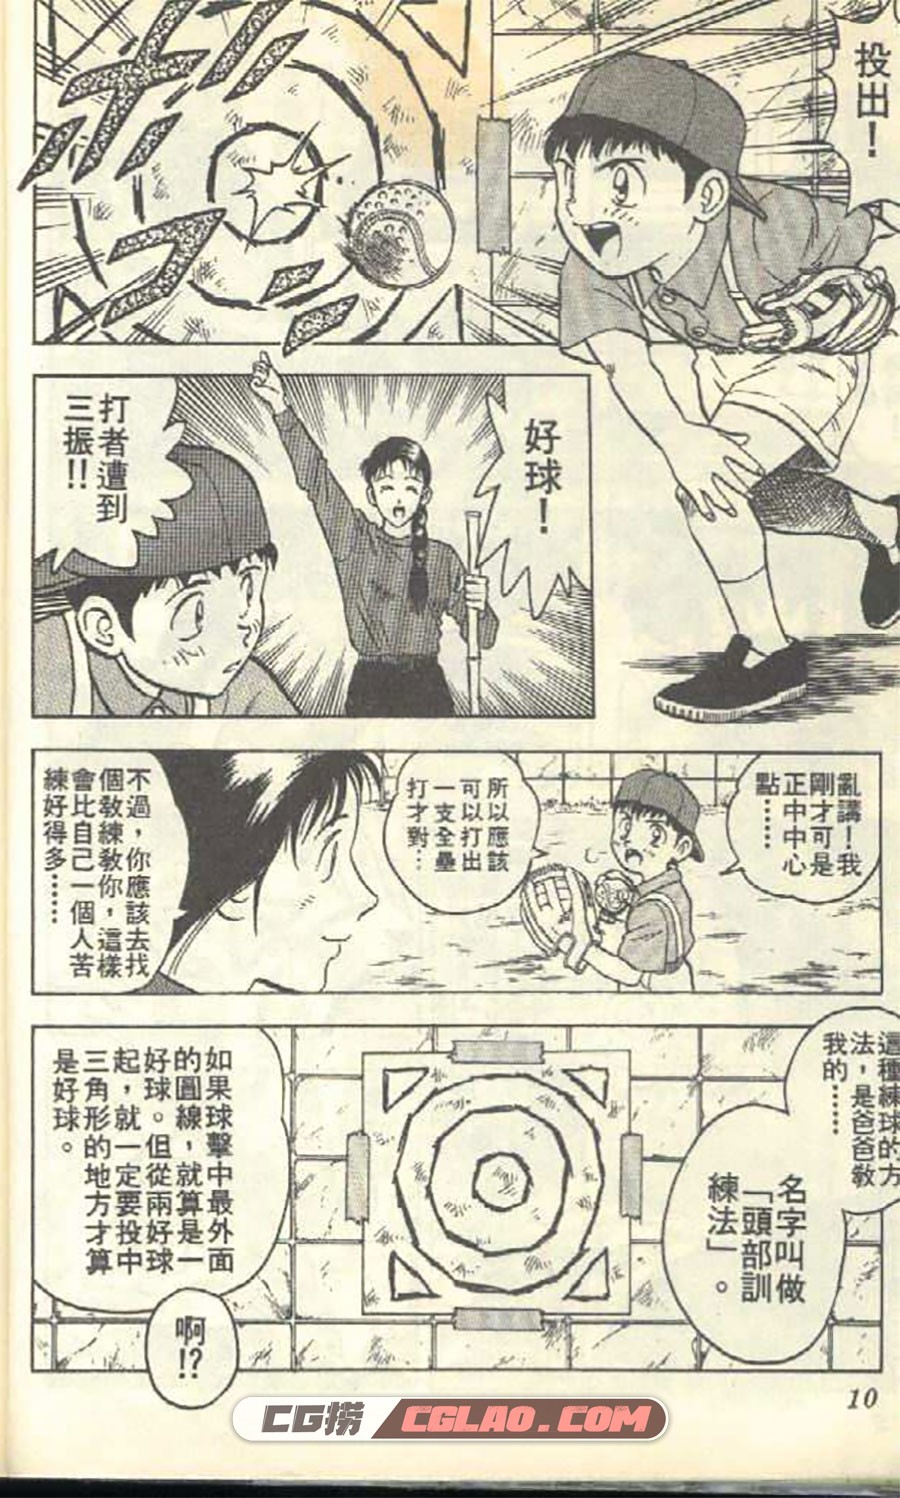 棒球大联盟 满田拓也 1-78卷 漫画全集下载 百度网盘下载,0006.jpg